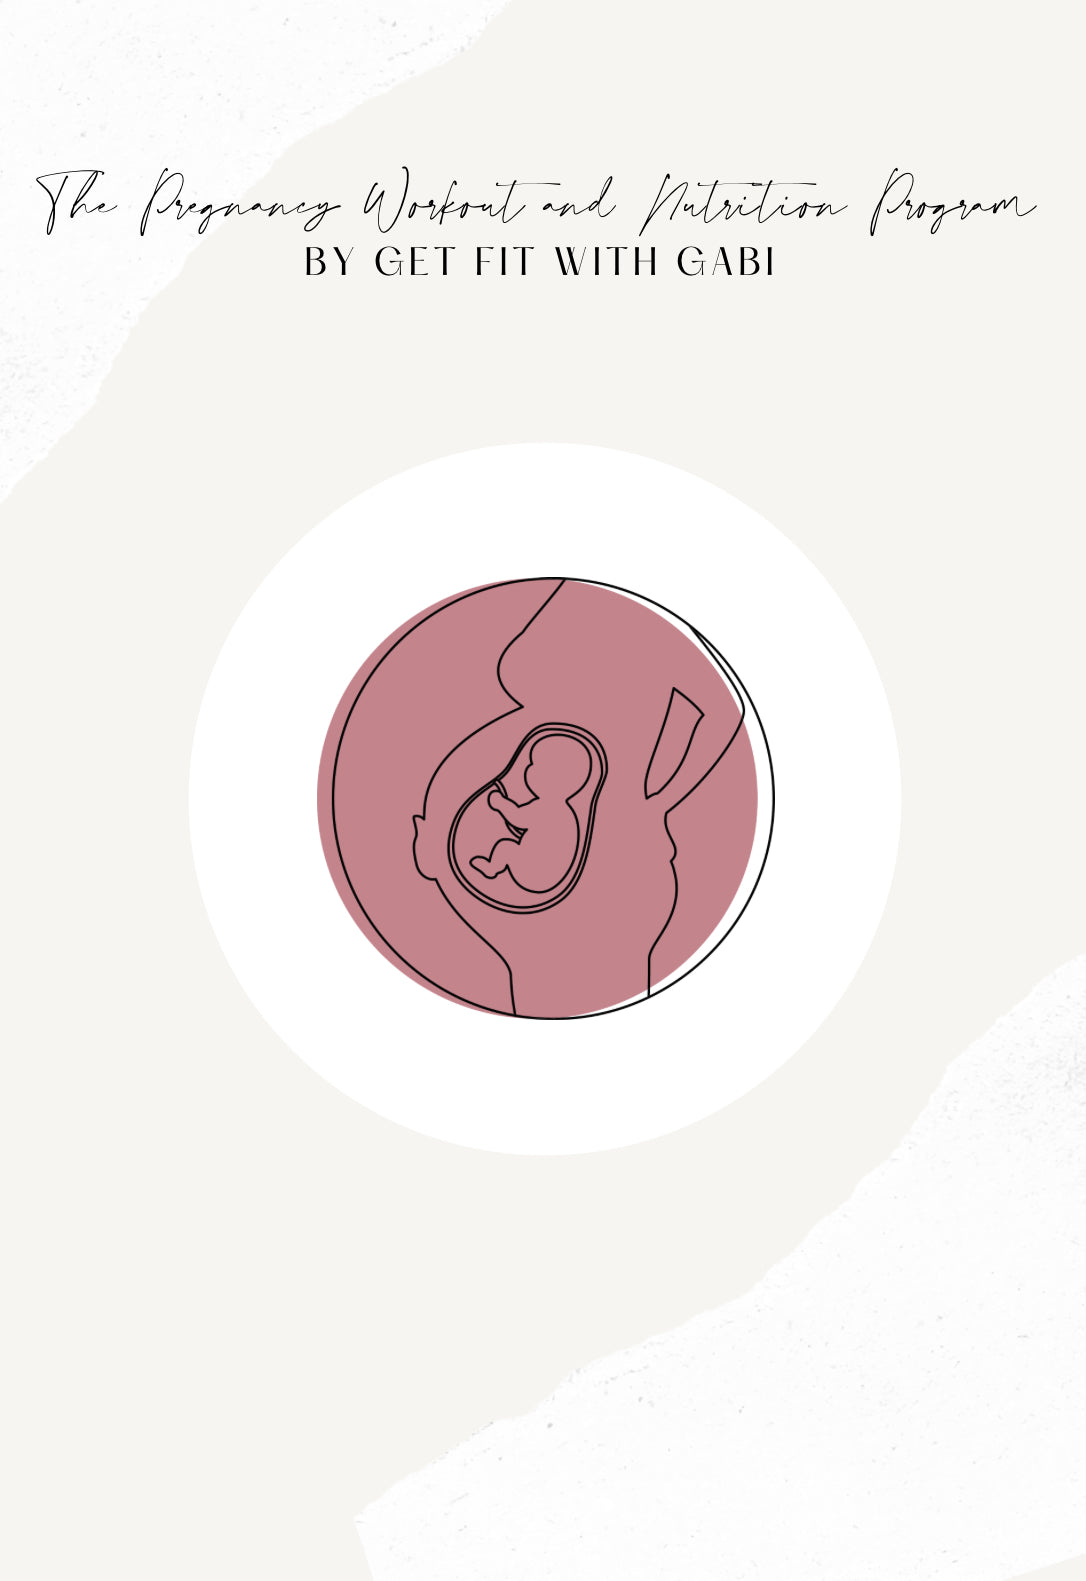 GFWG Pregnancy Program